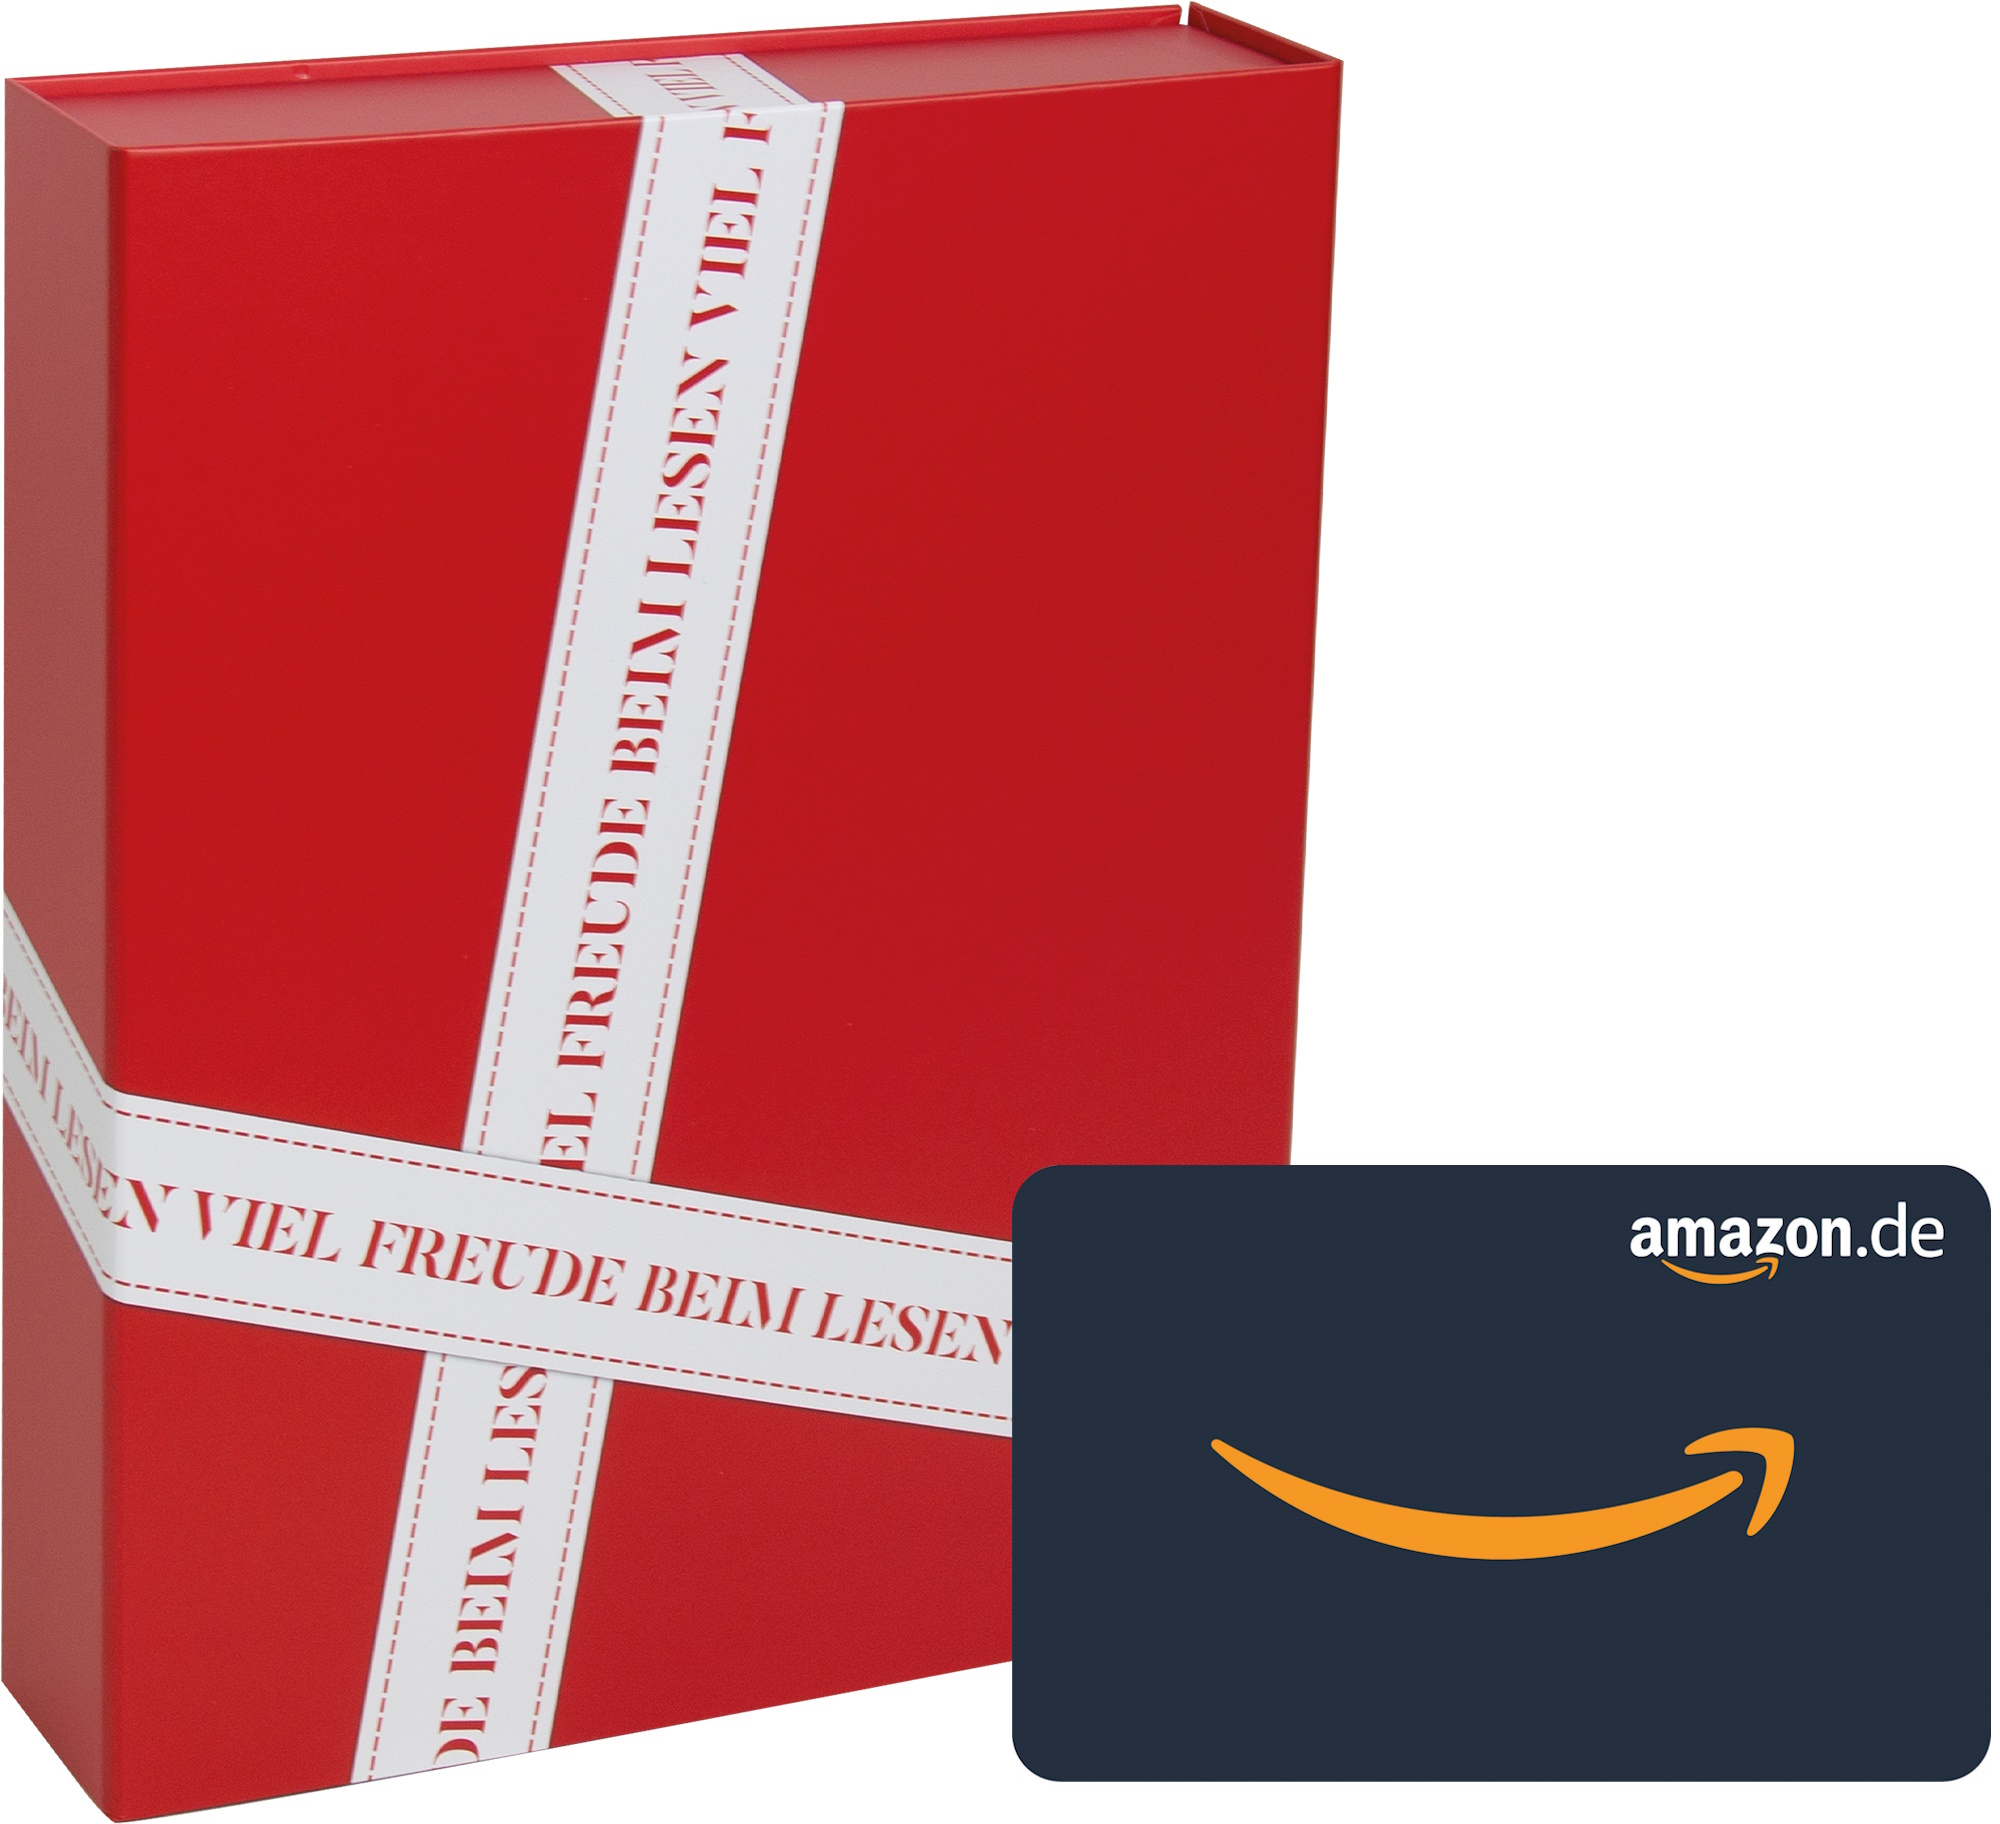 BRIGITTE Geschenkbox mit Amazon.de-Gutschein